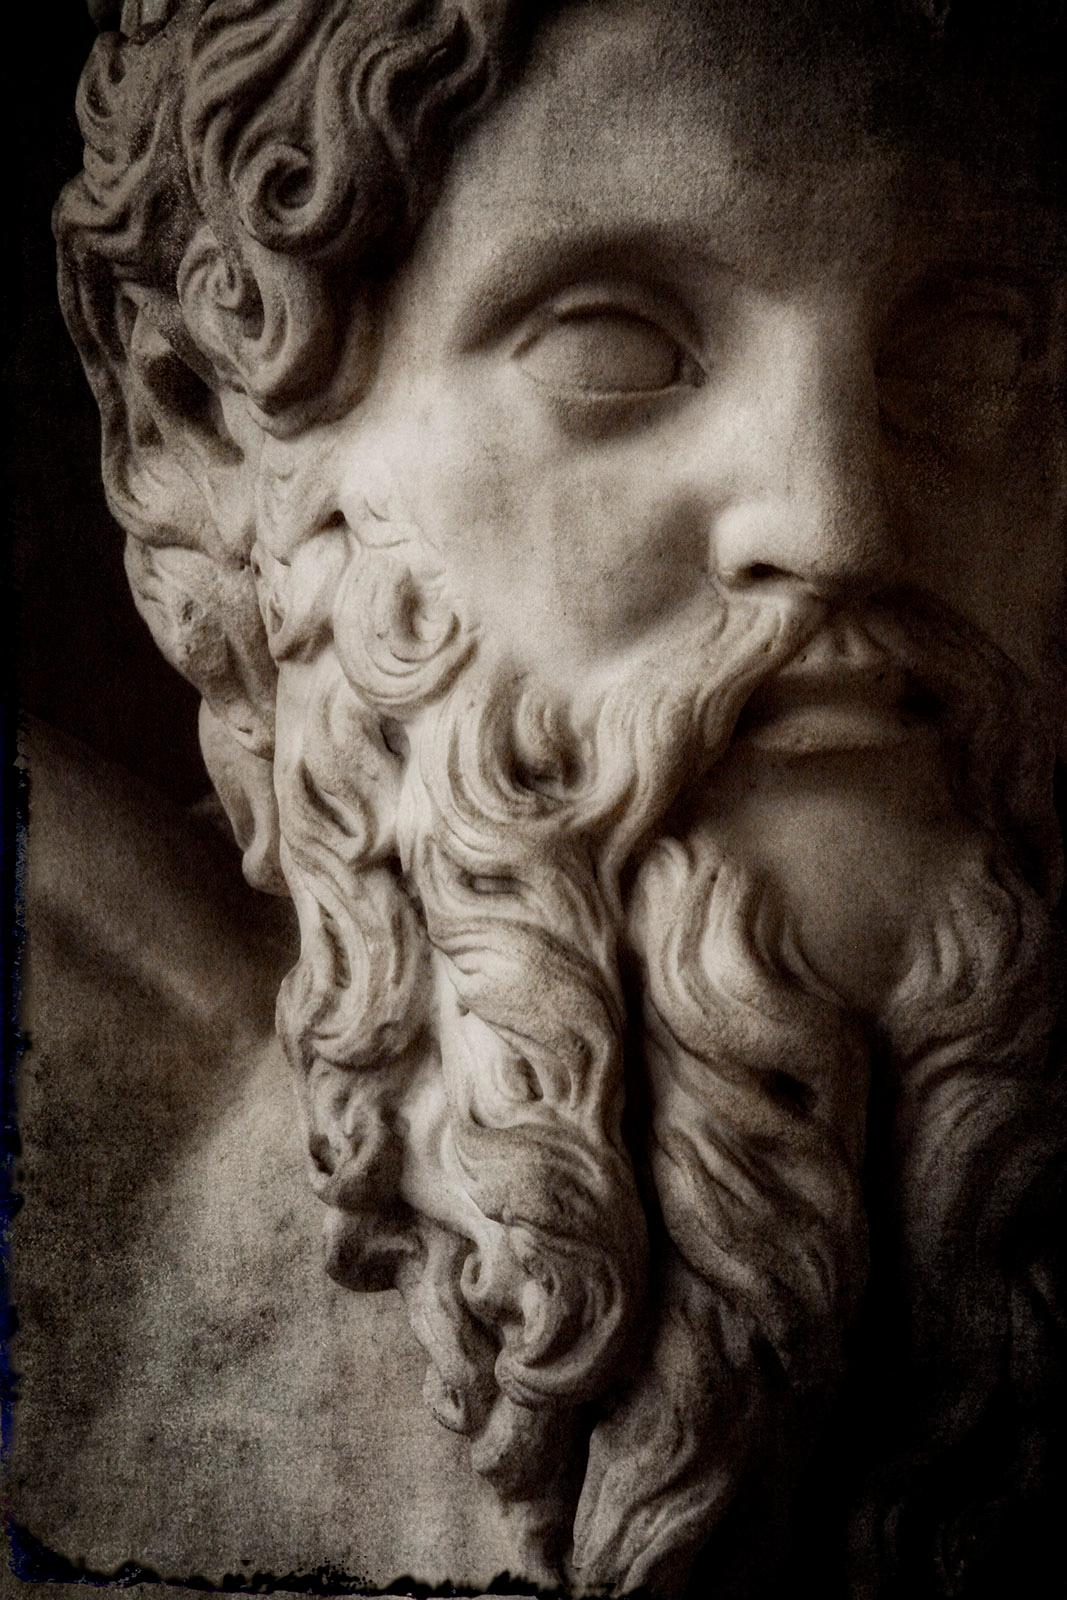 Italienisches Italia 2 – signierter Pigmentdruck in limitierter Auflage, Skulptur, griechischer Gott, Mythologie